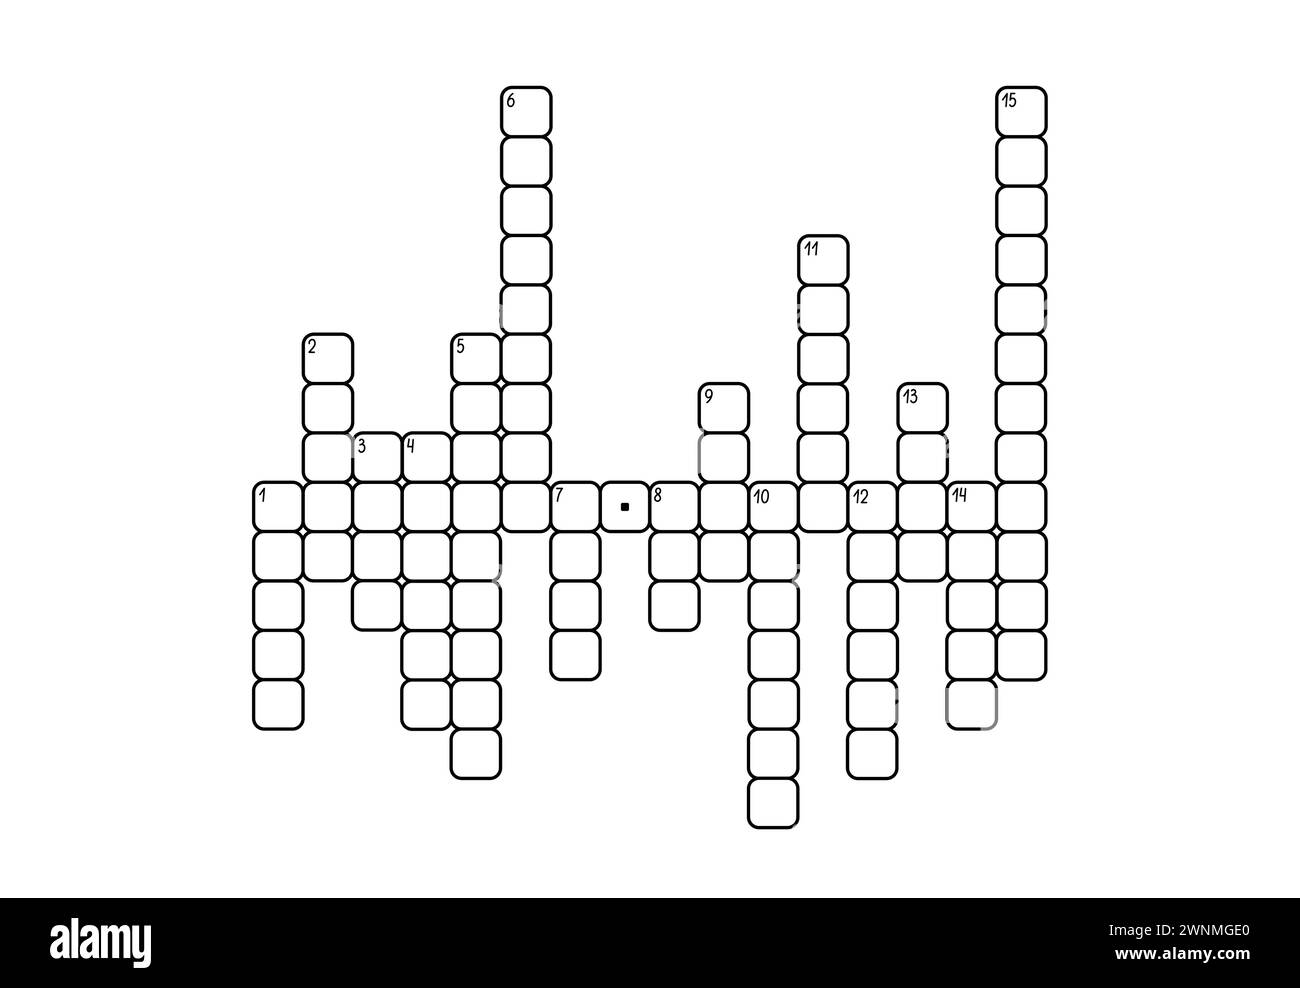 Leeres Kreuzworträtsel-Raster, leere Vorlagenquadrate zum Ausfüllen für Rätsel-, Bildungs- oder Freizeitspiele, bereit für die Erstellung eines beliebigen Wortpuzzle Stock Vektor